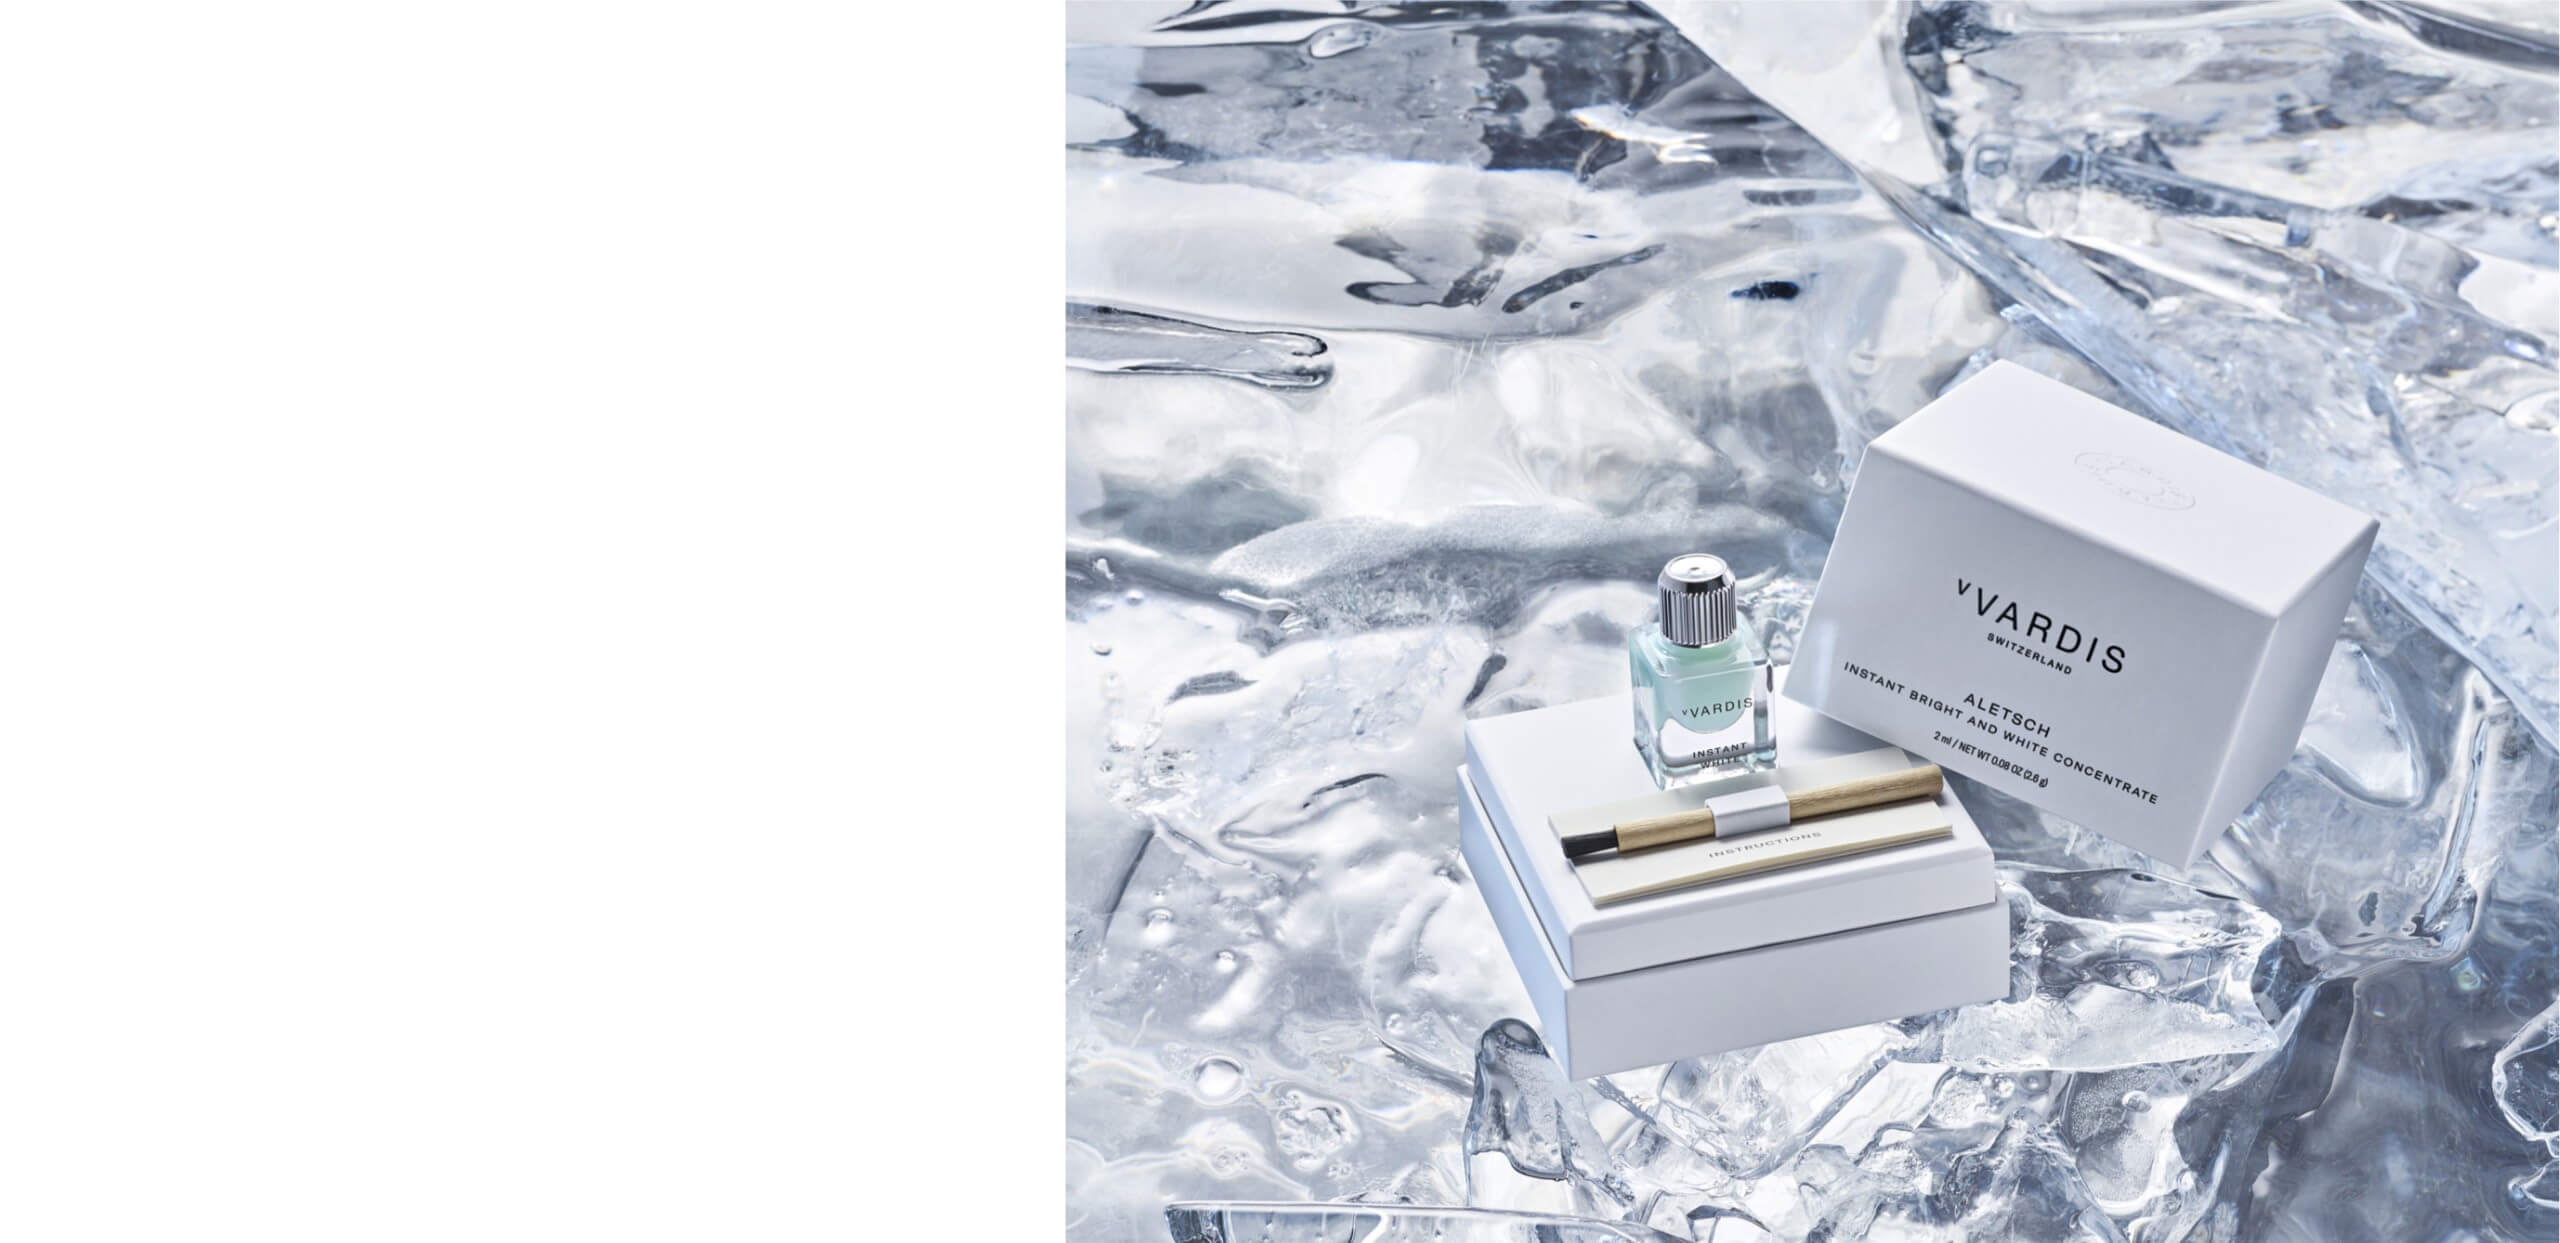 dentifrice Aletsch et son emballage sur de la glace